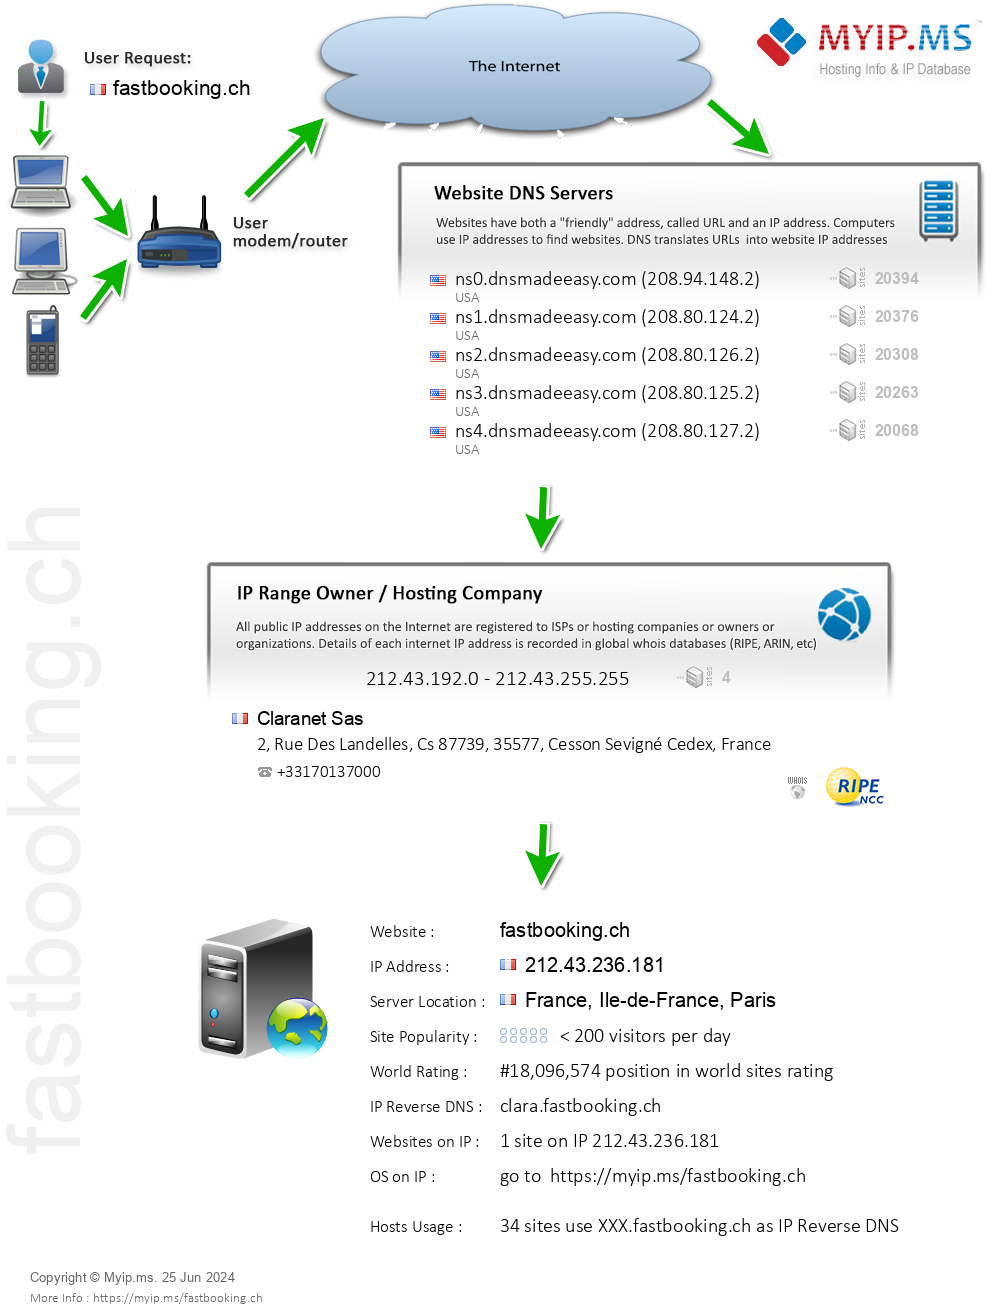 Fastbooking.ch - Website Hosting Visual IP Diagram